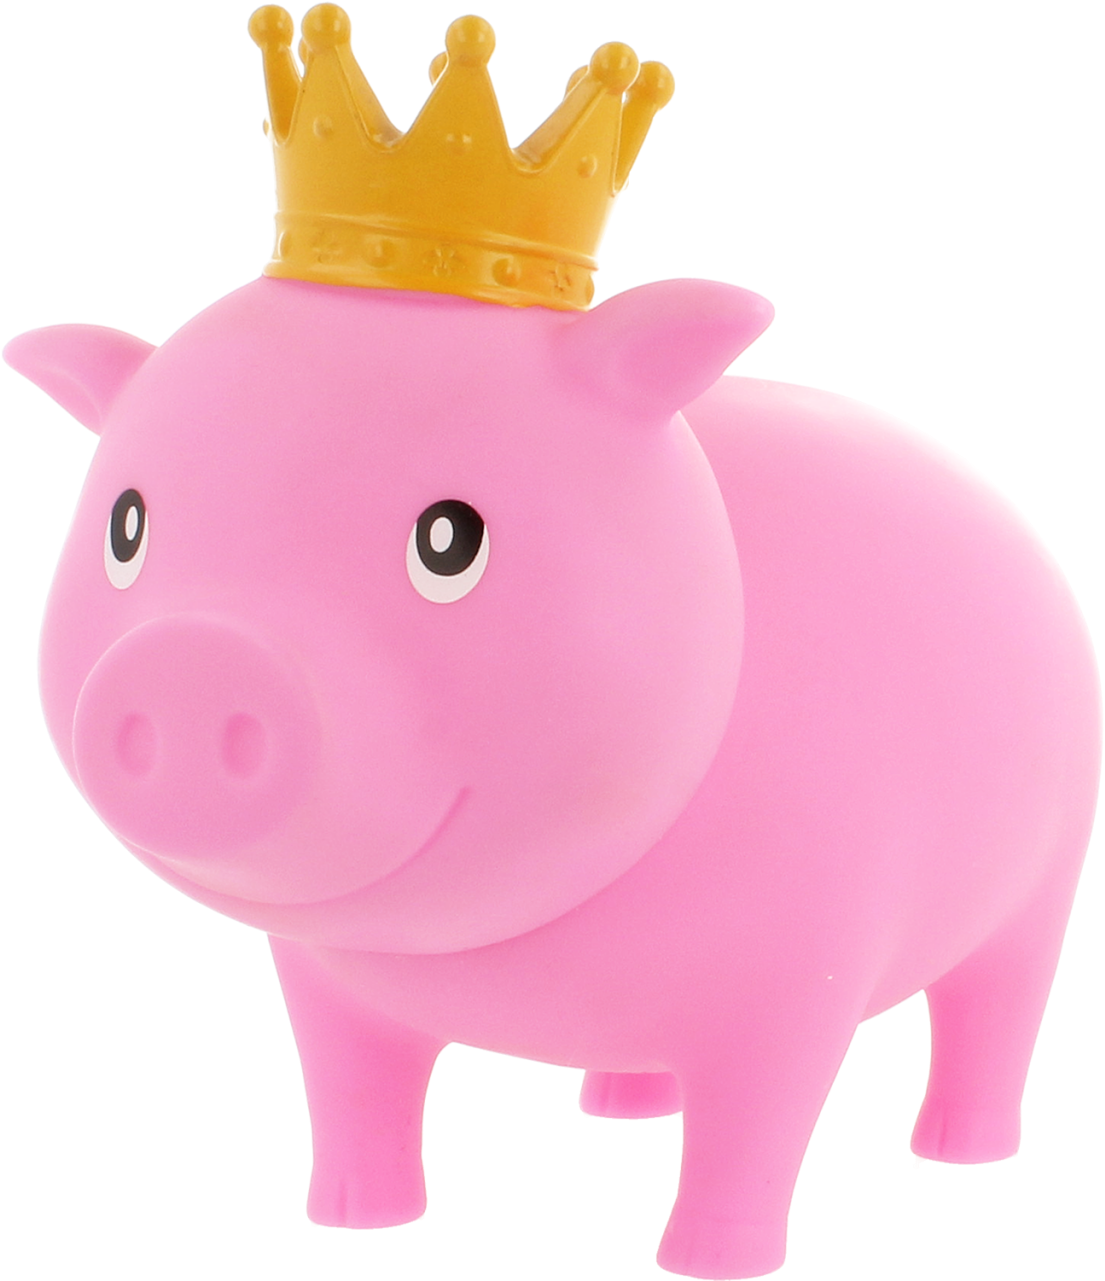 Plastic Piggy Banks - Piggy Bank Clipart (1280x1280), Png Download